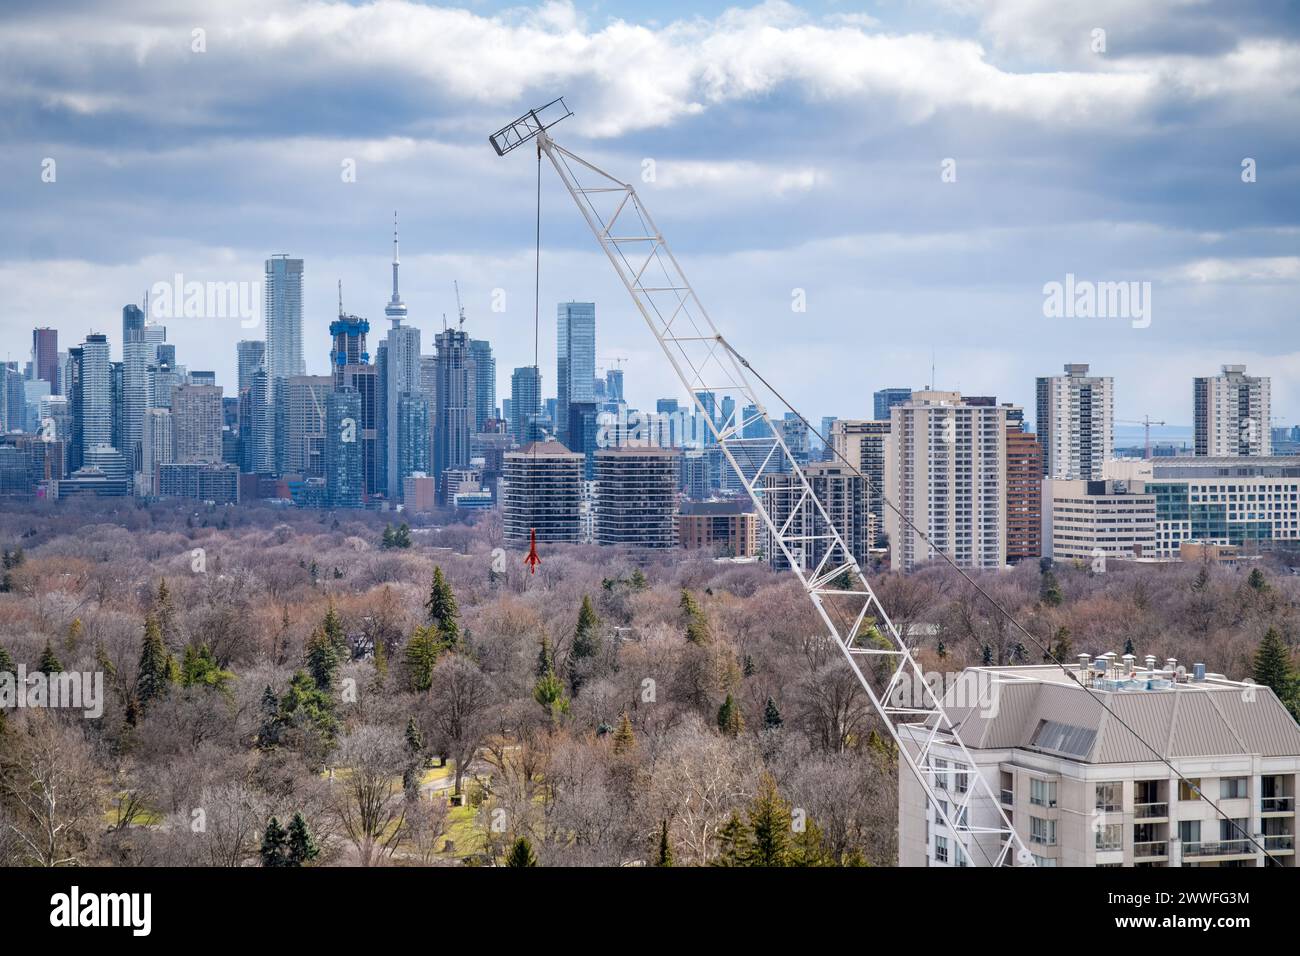 Du centre-ville au centre-ville, de nombreuses grues de construction pour la construction d'immeubles de grande hauteur sont aperçues au-dessus des nouveaux sites de développement dans la ville de Toronto. Banque D'Images